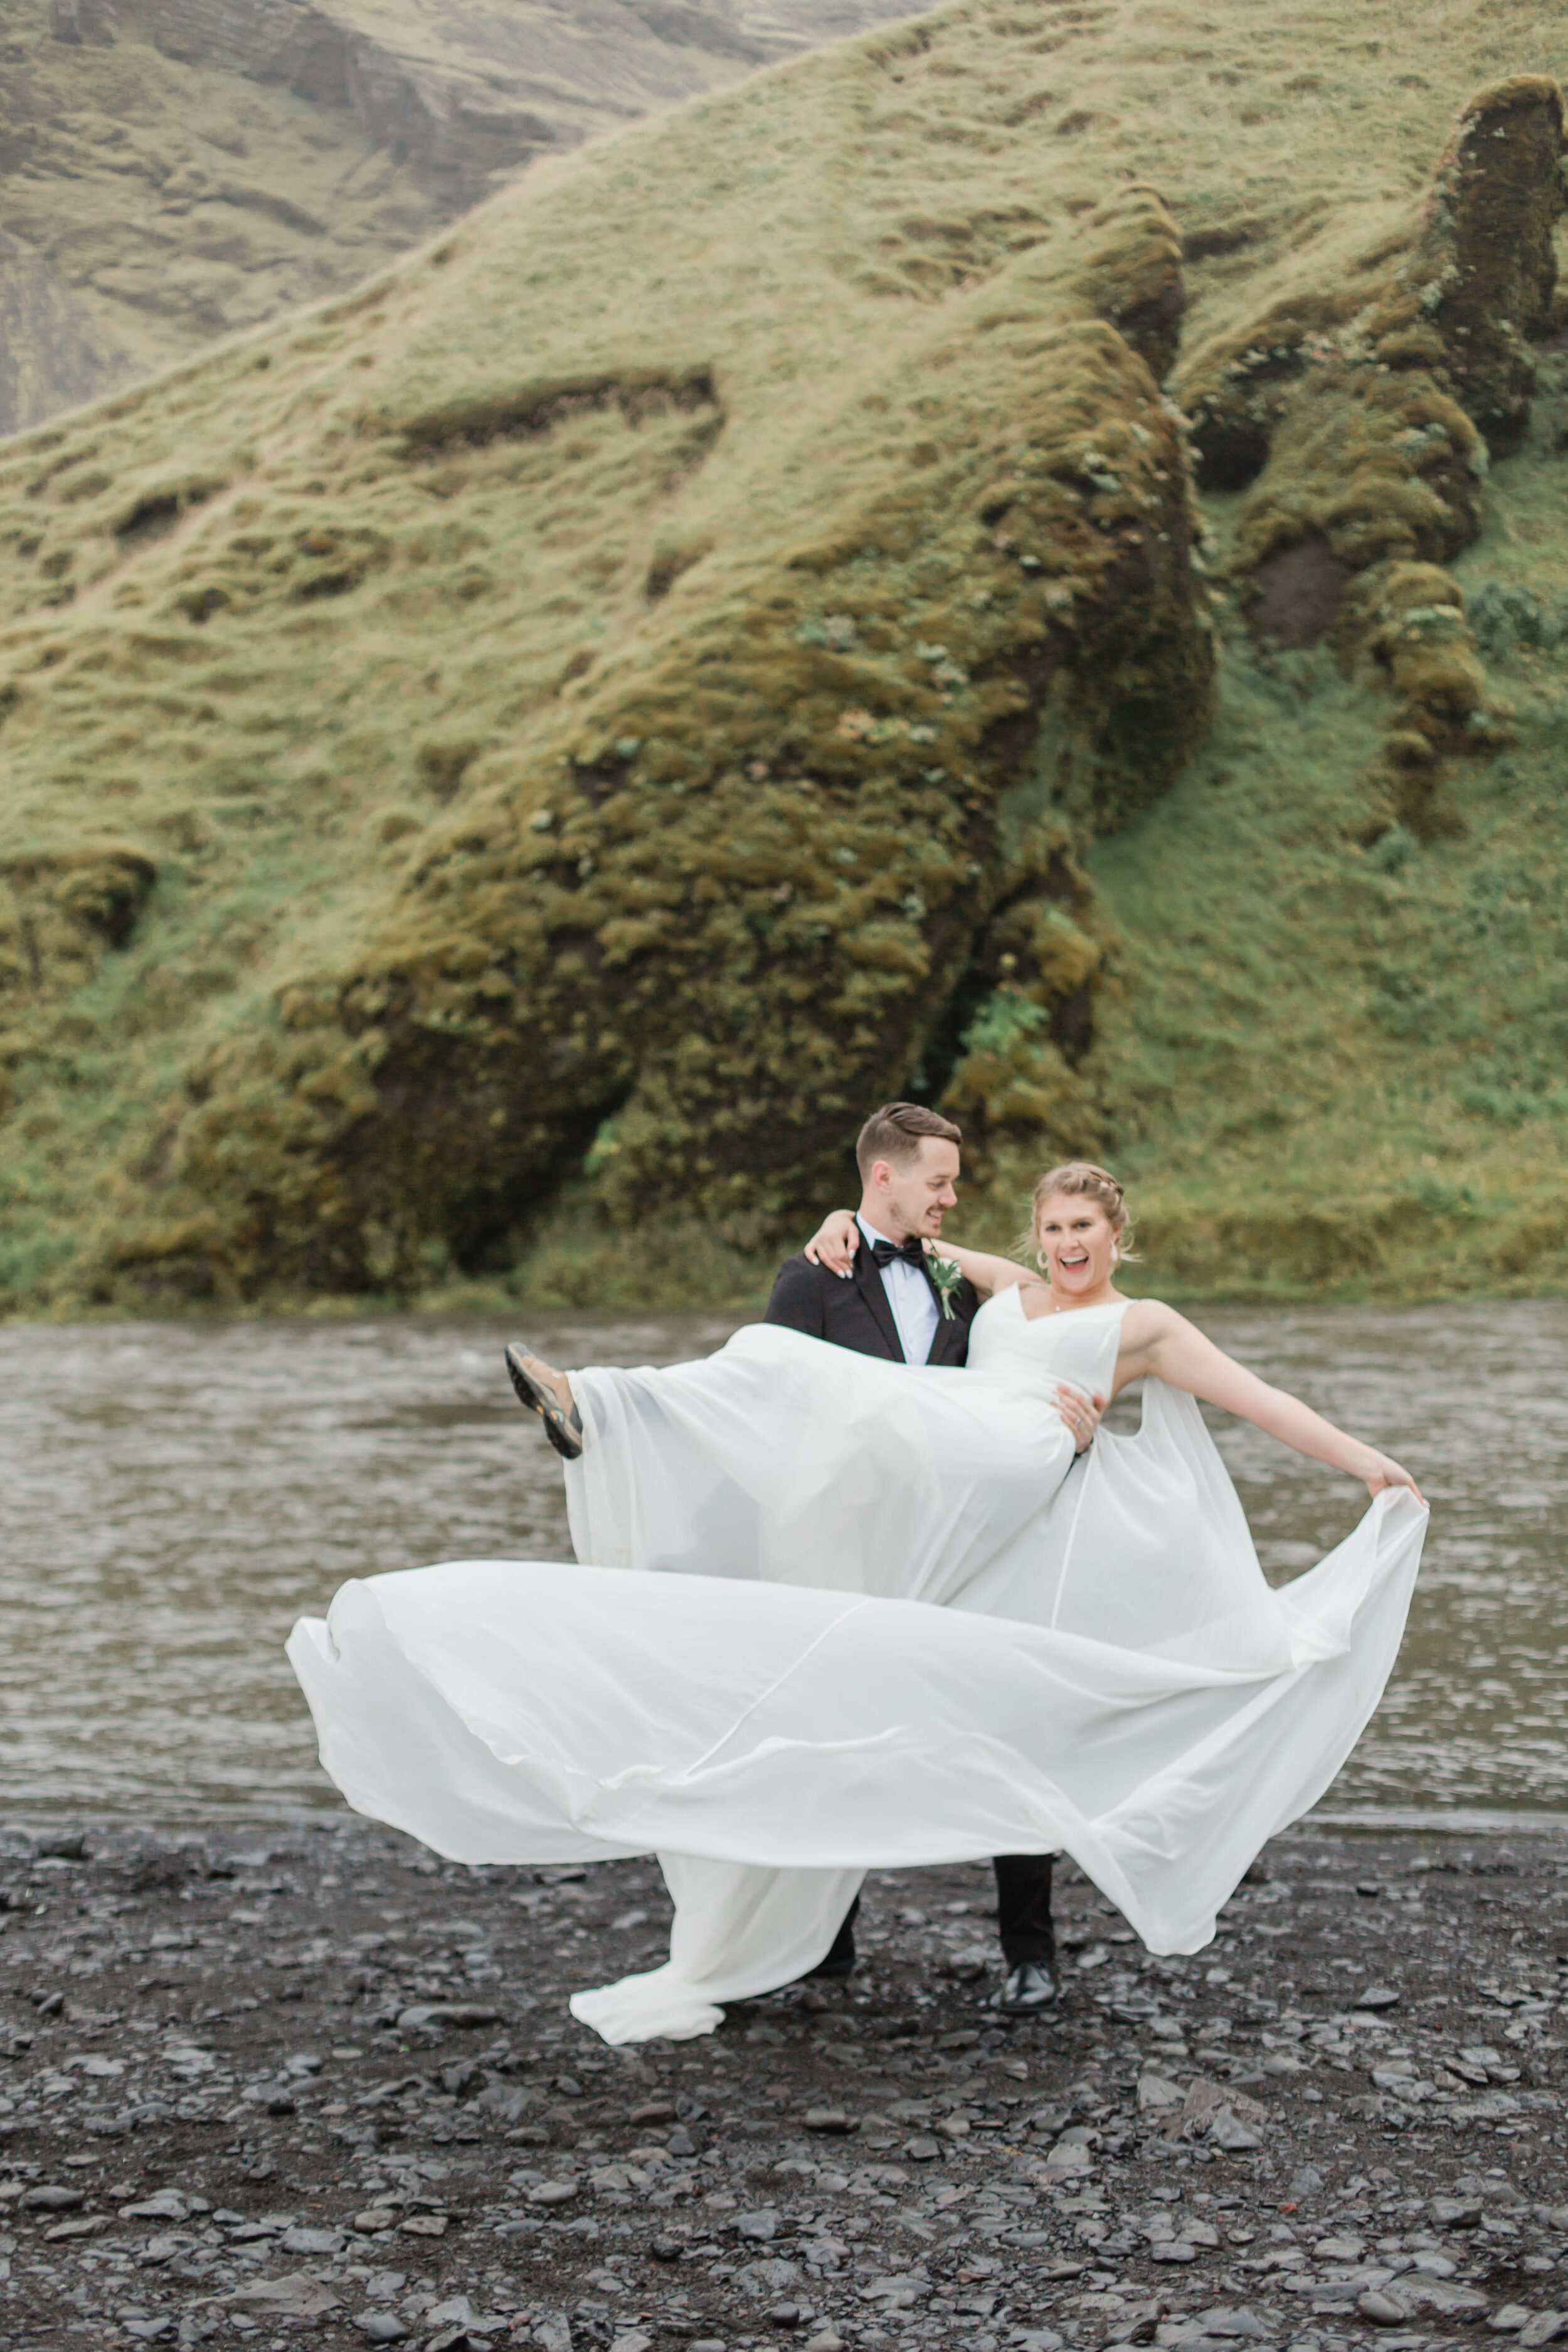 A couple twirls near near cliffs in Iceland.